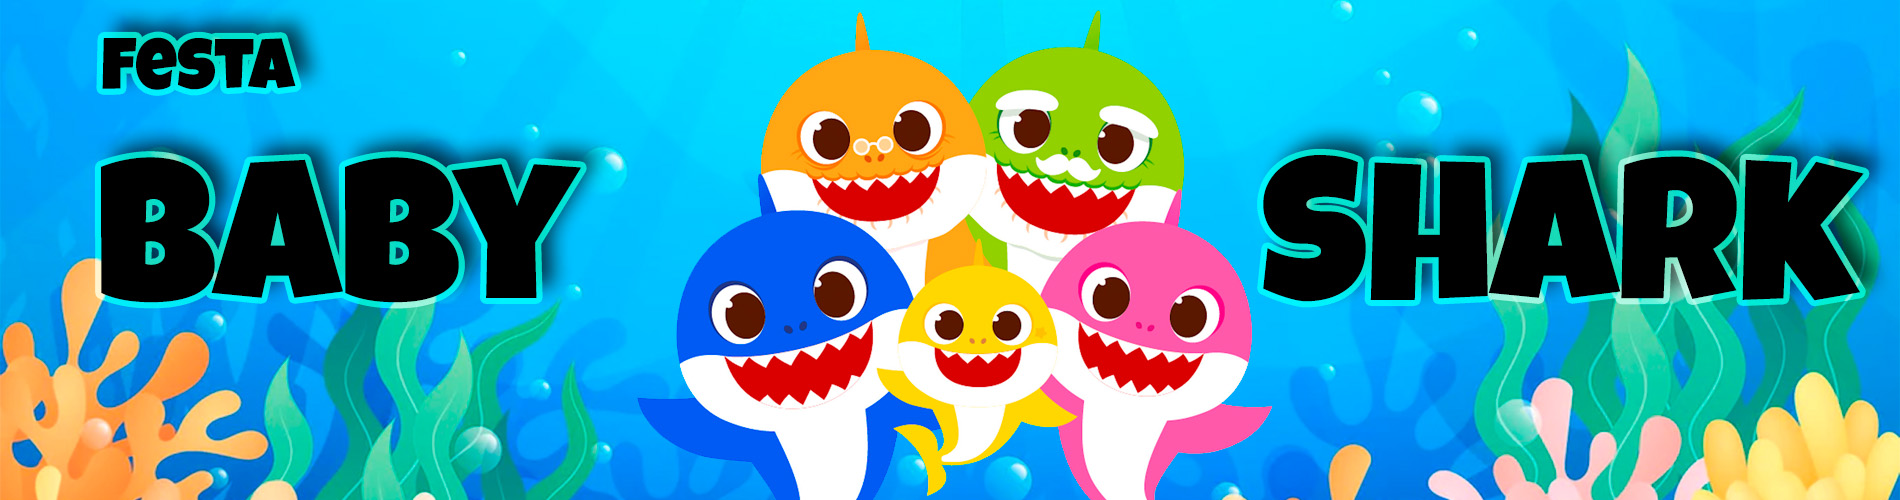 Banner Festa Baby Shark - Desktop